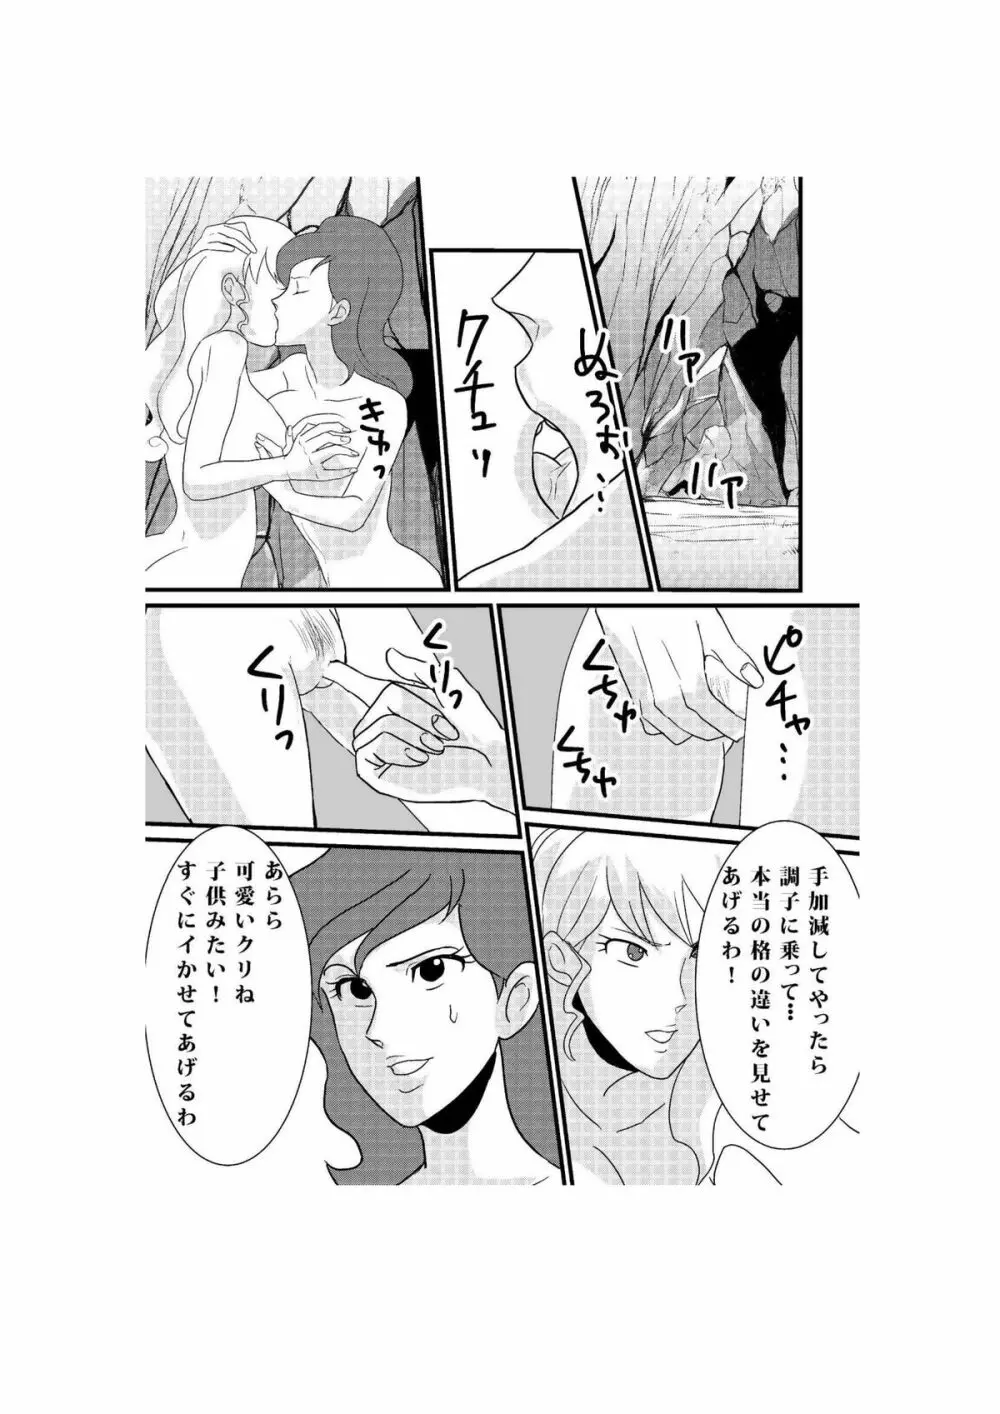 Fushi no Kyouten Ureta Onna no Tatakai - Fujiko VS Emmanuelle - page23